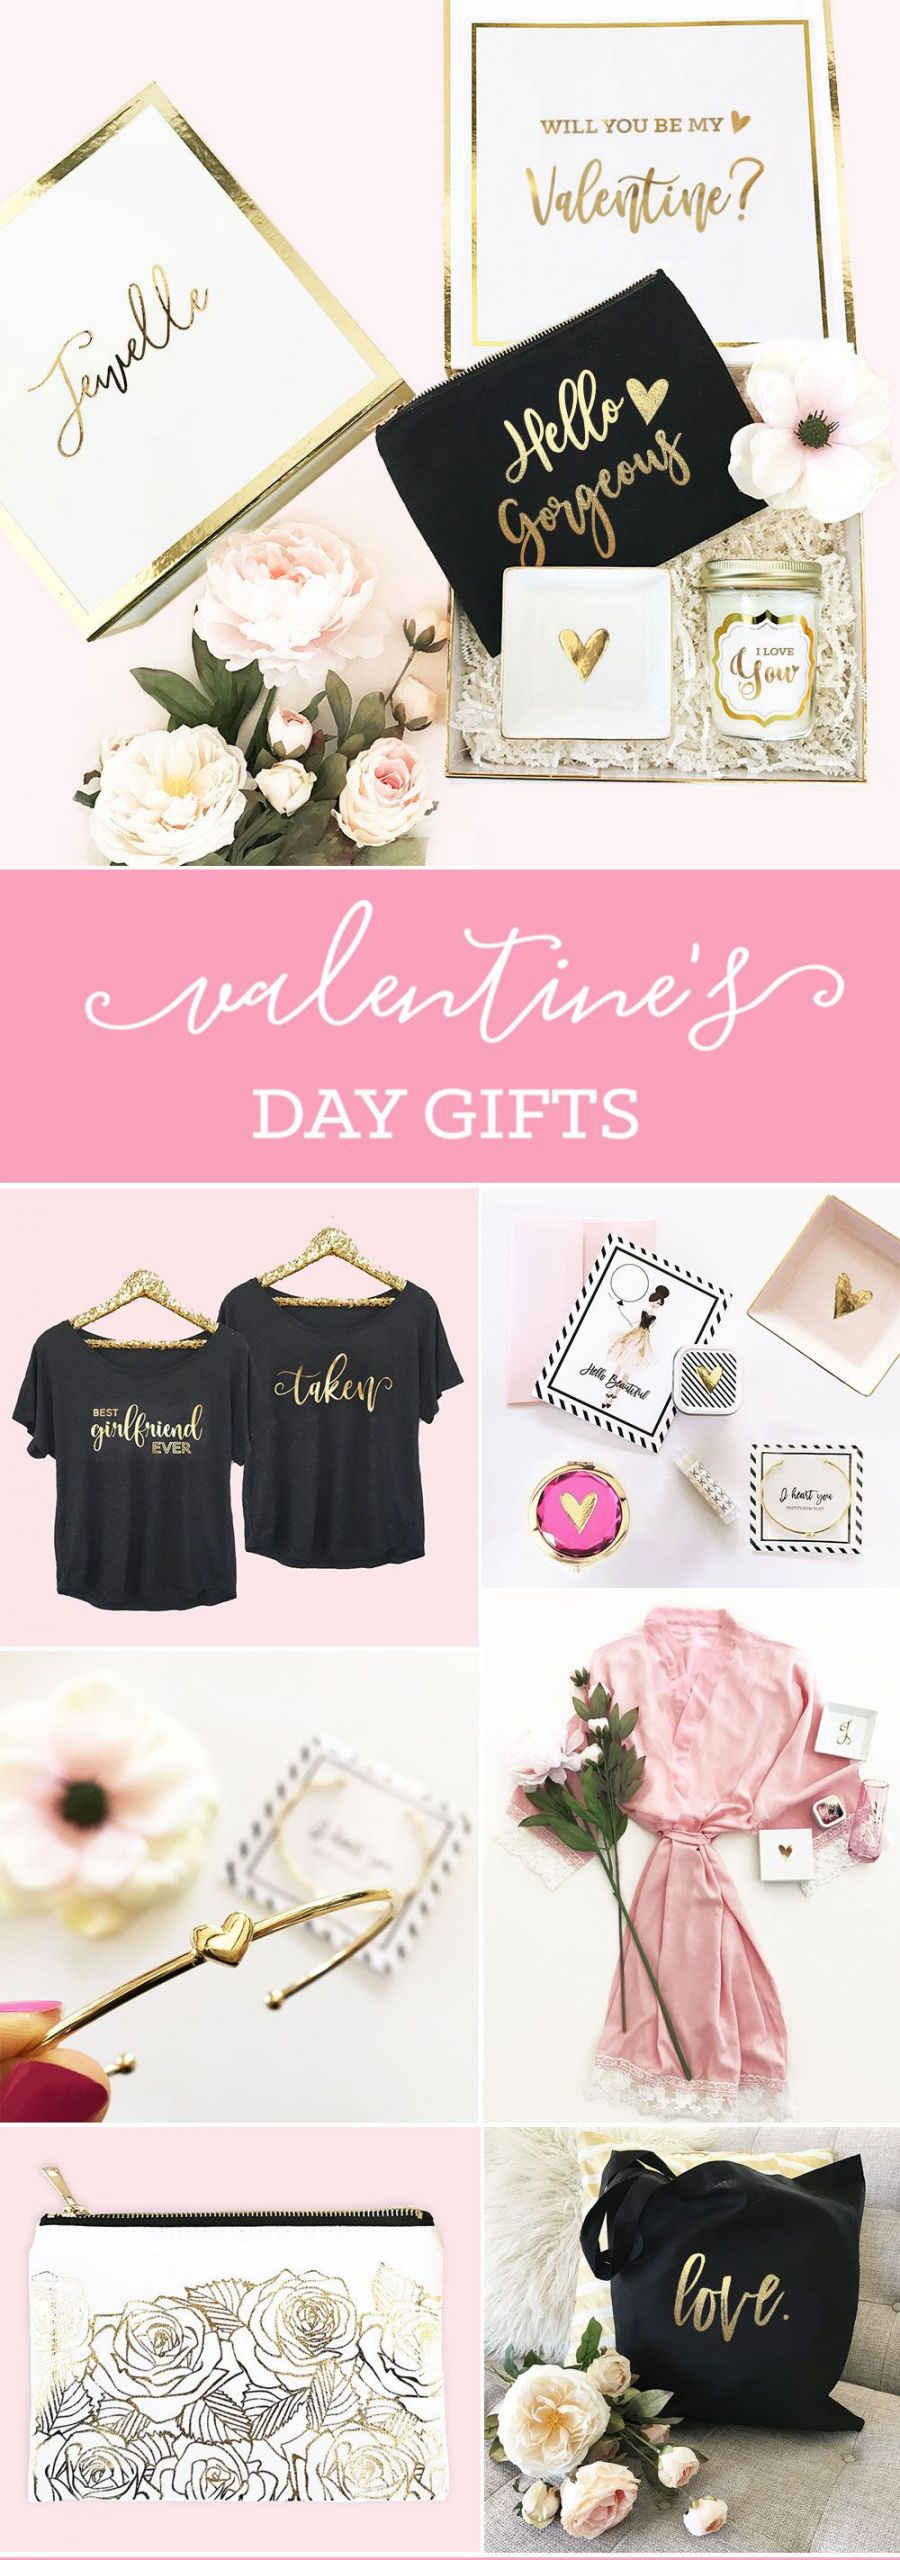 Be My Valentine Gift Ideas
 Valentine Gift Ideas